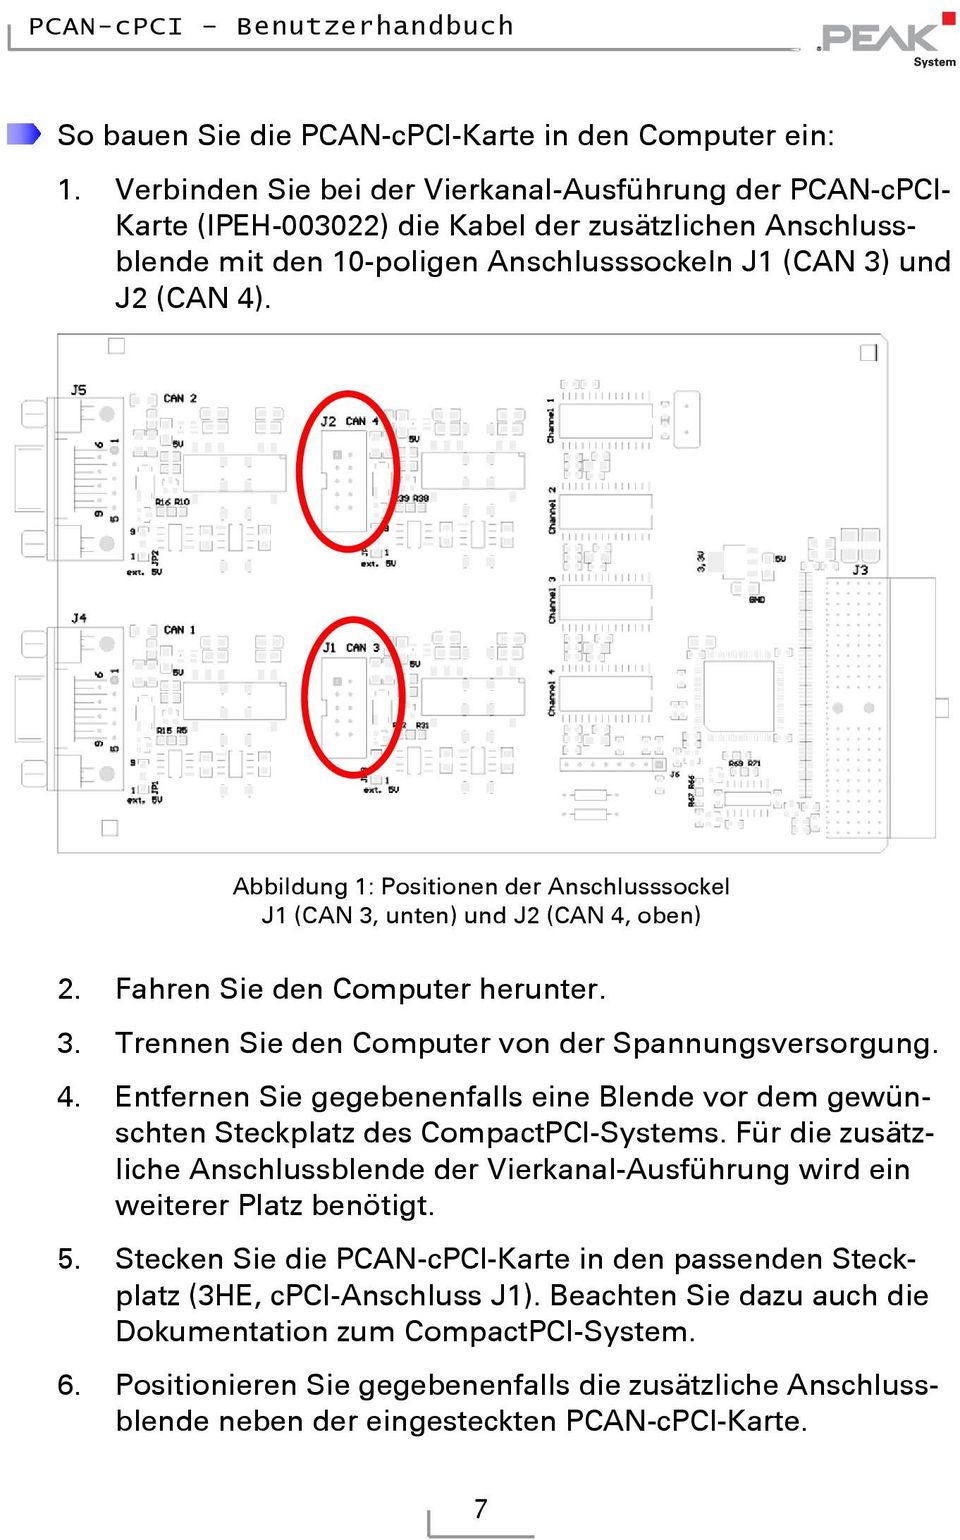 Abbildung 1: Positionen der Anschlusssockel J1 (CAN 3, unten) und J2 (CAN 4, oben) 2. Fahren Sie den Computer herunter. 3. Trennen Sie den Computer von der Spannungsversorgung. 4. Entfernen Sie gegebenenfalls eine Blende vor dem gewünschten Steckplatz des CompactPCI-Systems.